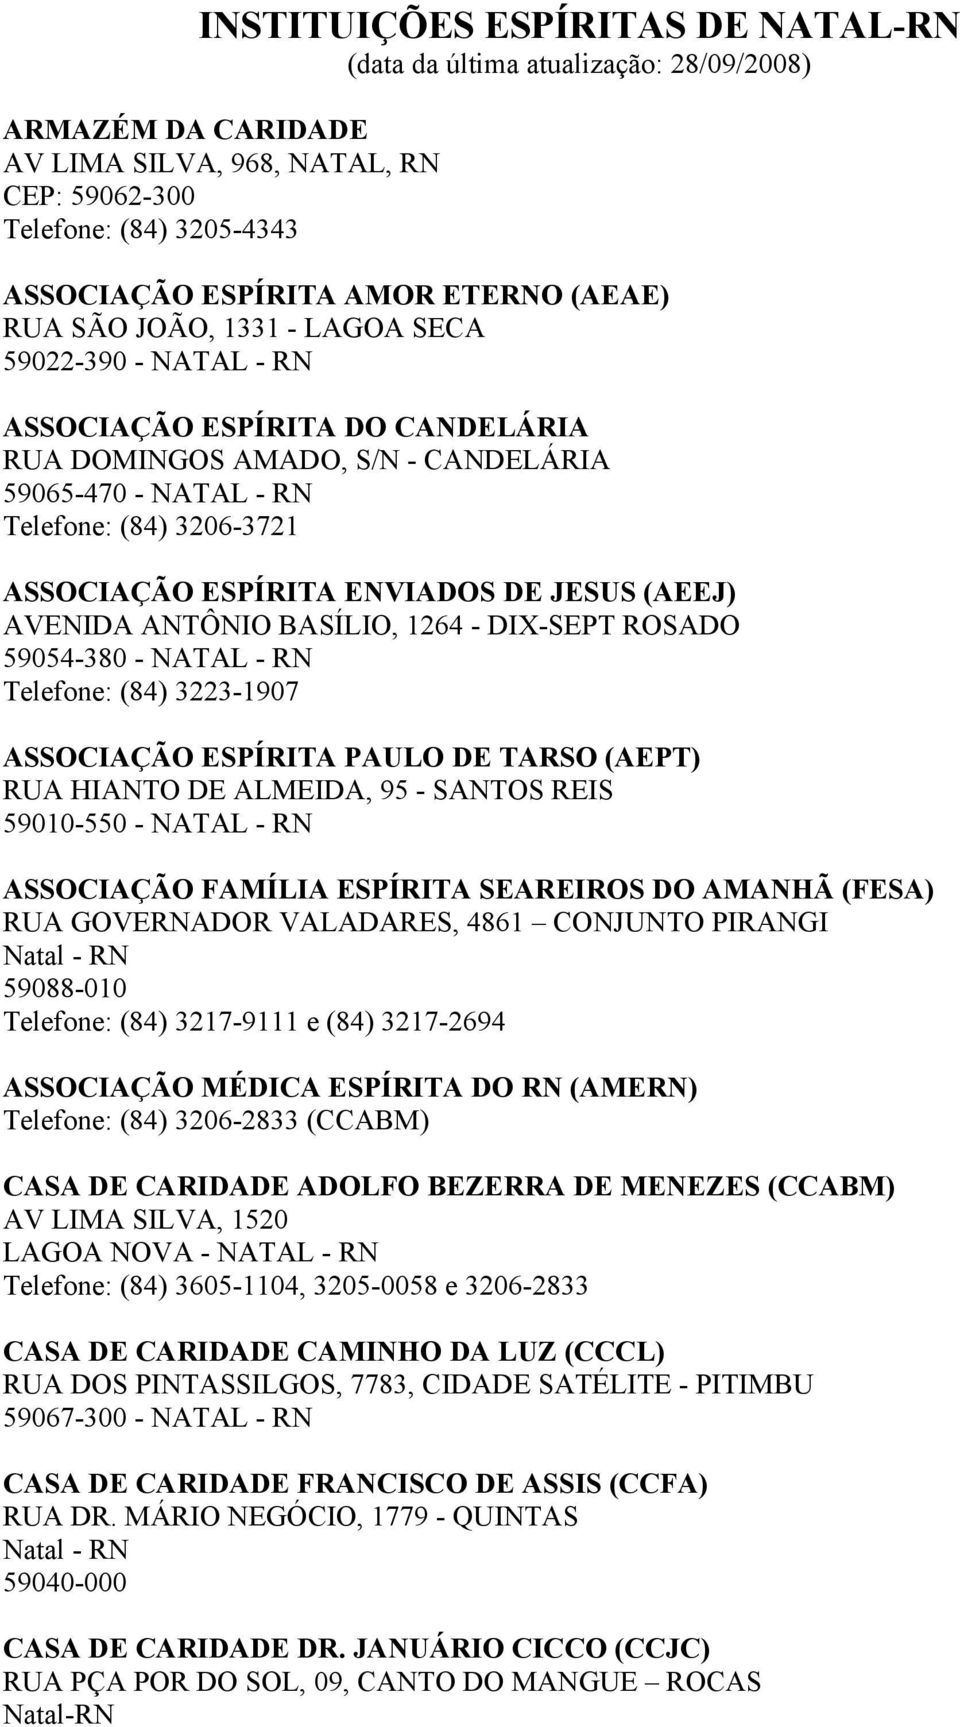 ESPÍRITA ENVIADOS DE JESUS (AEEJ) AVENIDA ANTÔNIO BASÍLIO, 1264 - DIX-SEPT ROSADO 59054-380 - NATAL - RN Telefone: (84) 3223-1907 ASSOCIAÇÃO ESPÍRITA PAULO DE TARSO (AEPT) RUA HIANTO DE ALMEIDA, 95 -